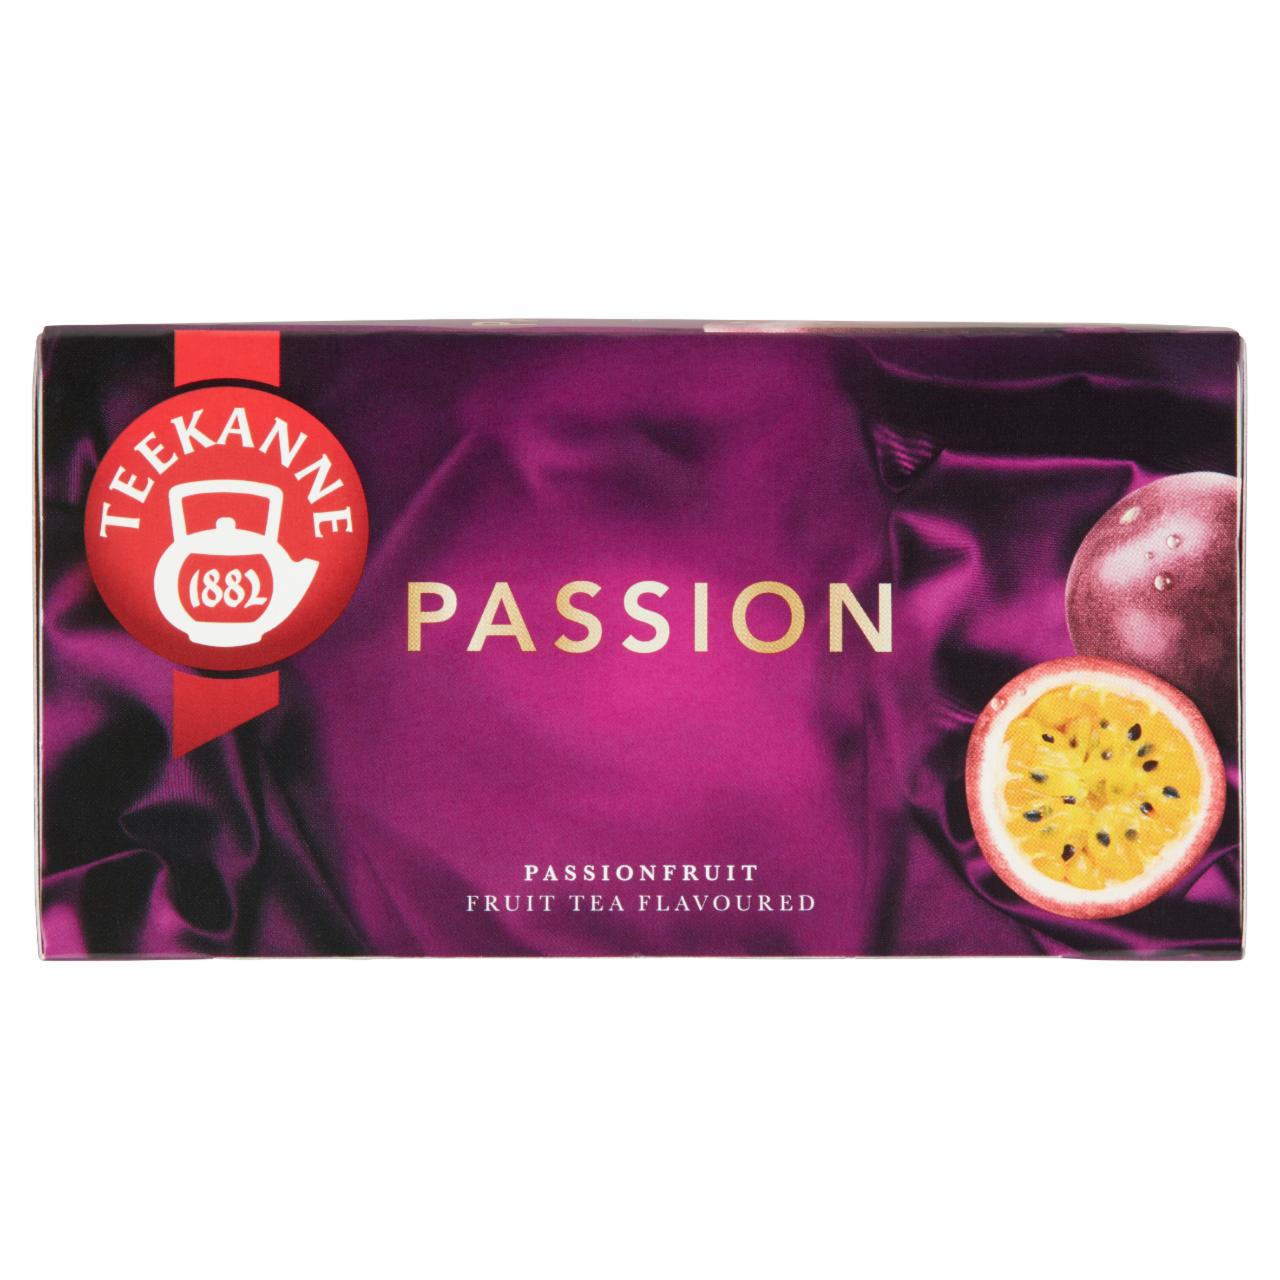 Képek - Teekanne Passion maracuja és őszibarack ízesítésű gyümölcstea keverék 20 filter 45 g